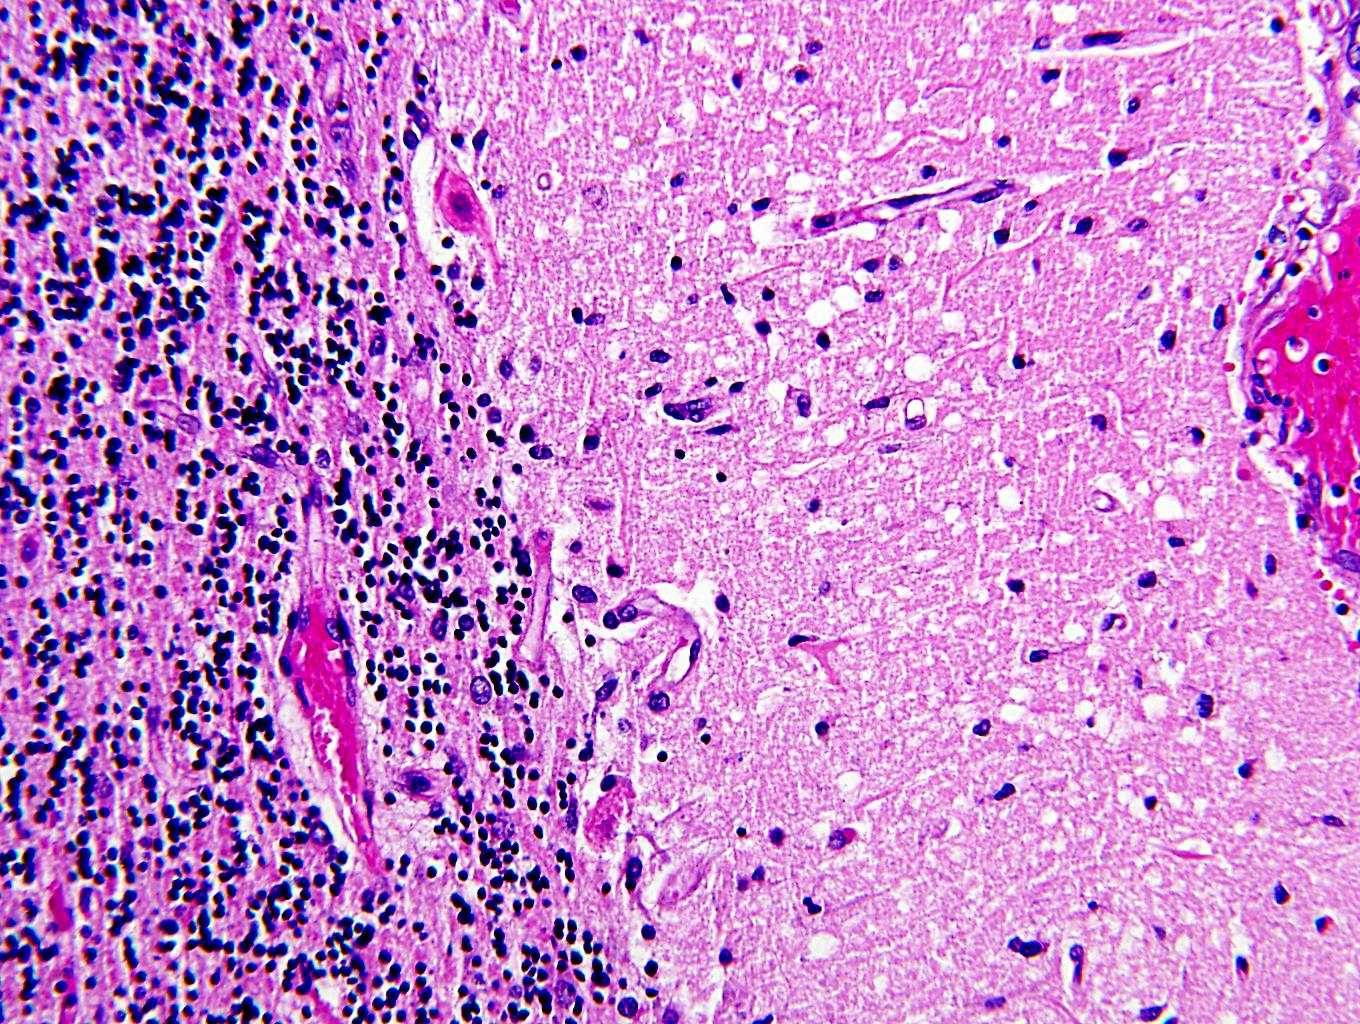 Acute neuronal necrosis - cerebellum